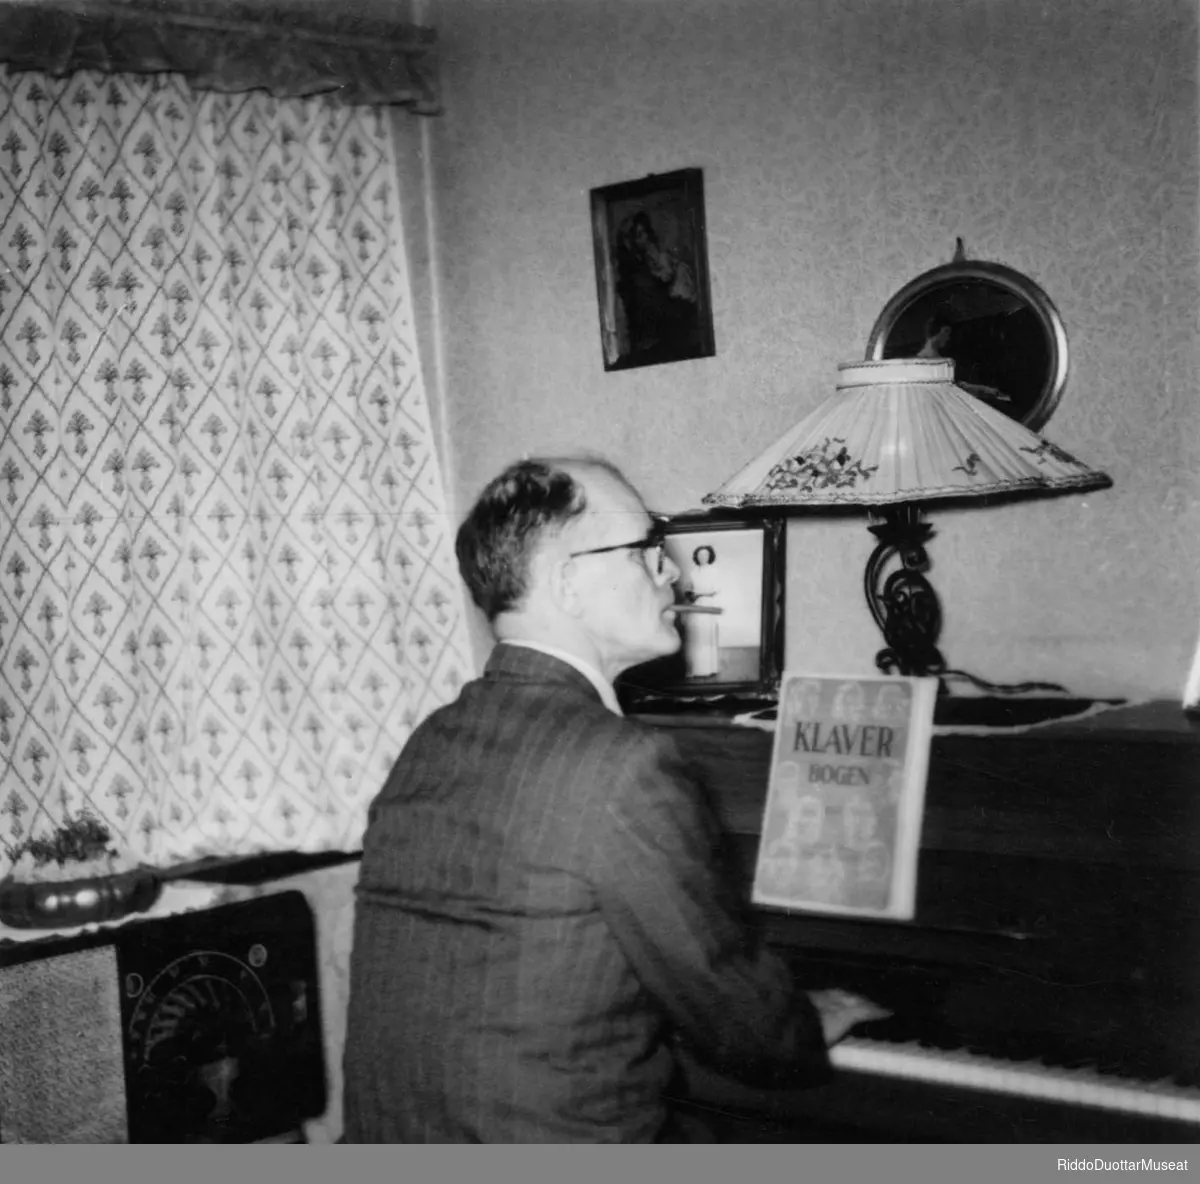 Jan Harr cuojaha piánu stobus.
Jan Harr spiller med piano i stuen.